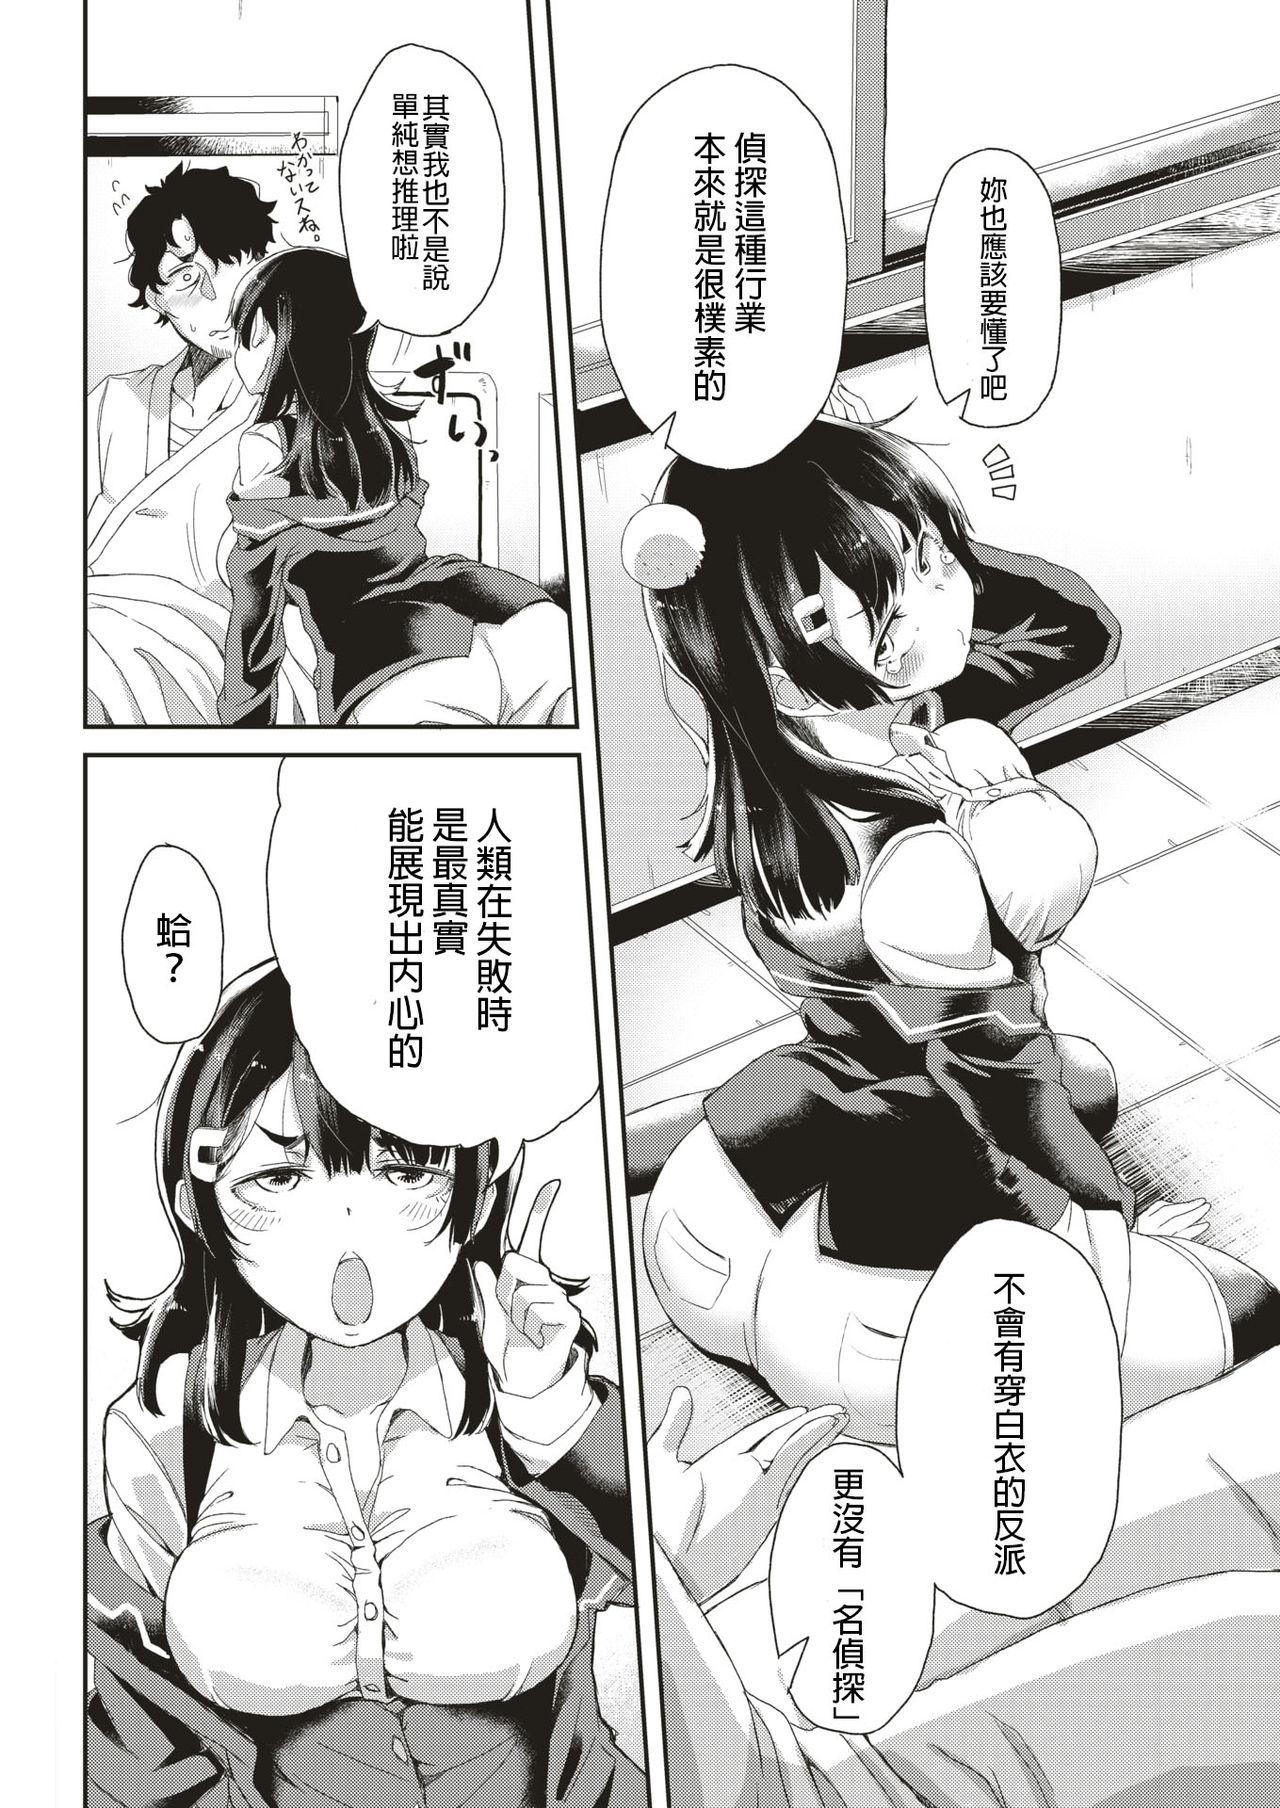 Stranger Tantei Minarai Enosawa Sumika no Junan Flash - Page 4